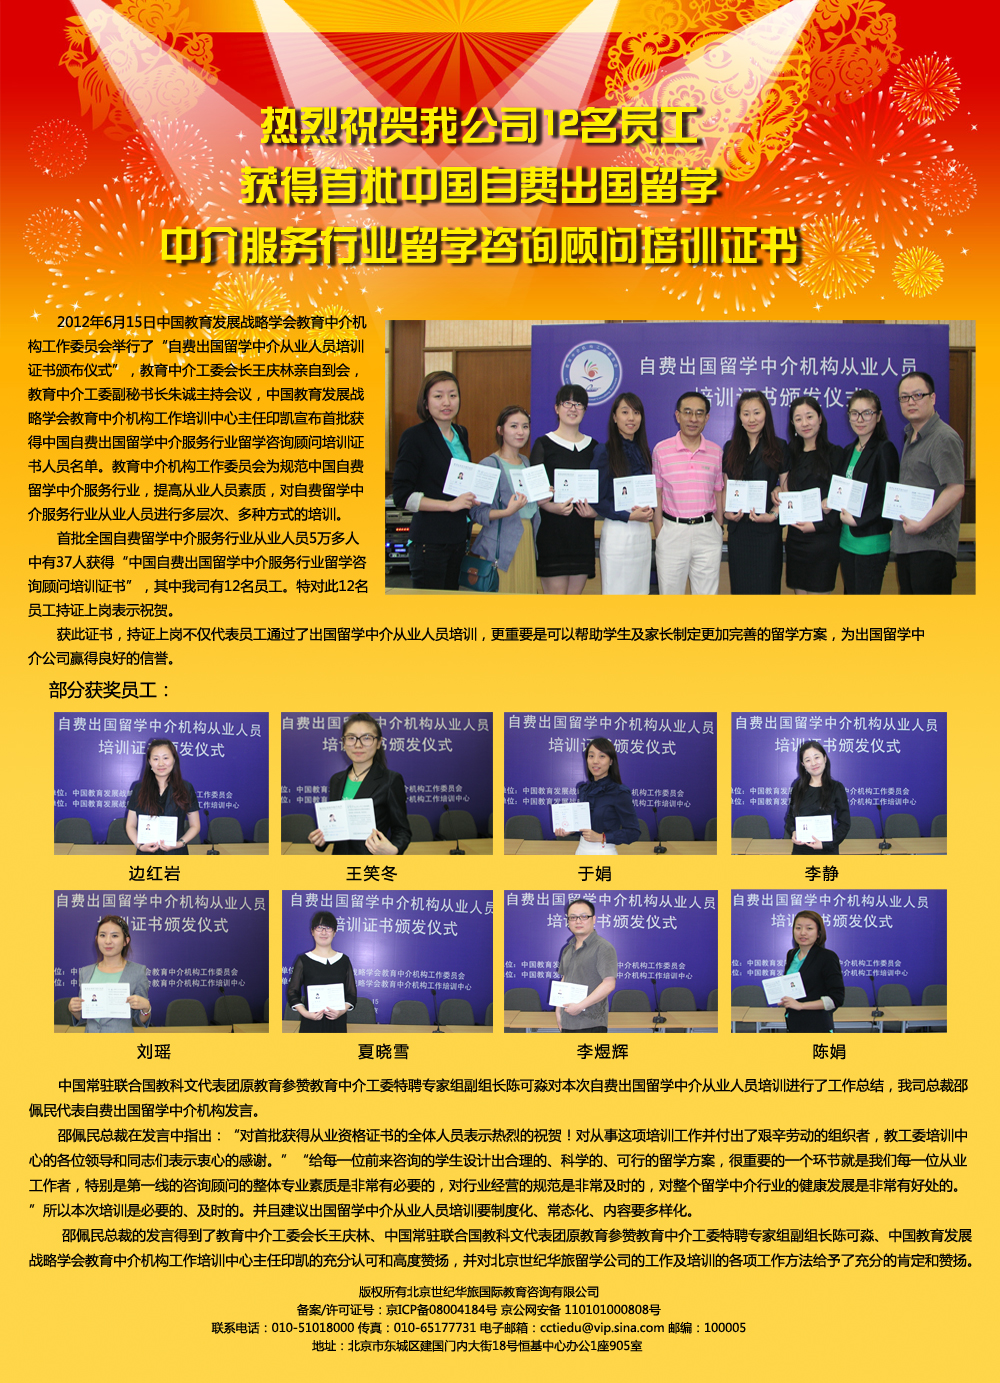 庆祝我公司12名员工获得首批中国自费出国留学中介服务行业留学咨询顾问证书